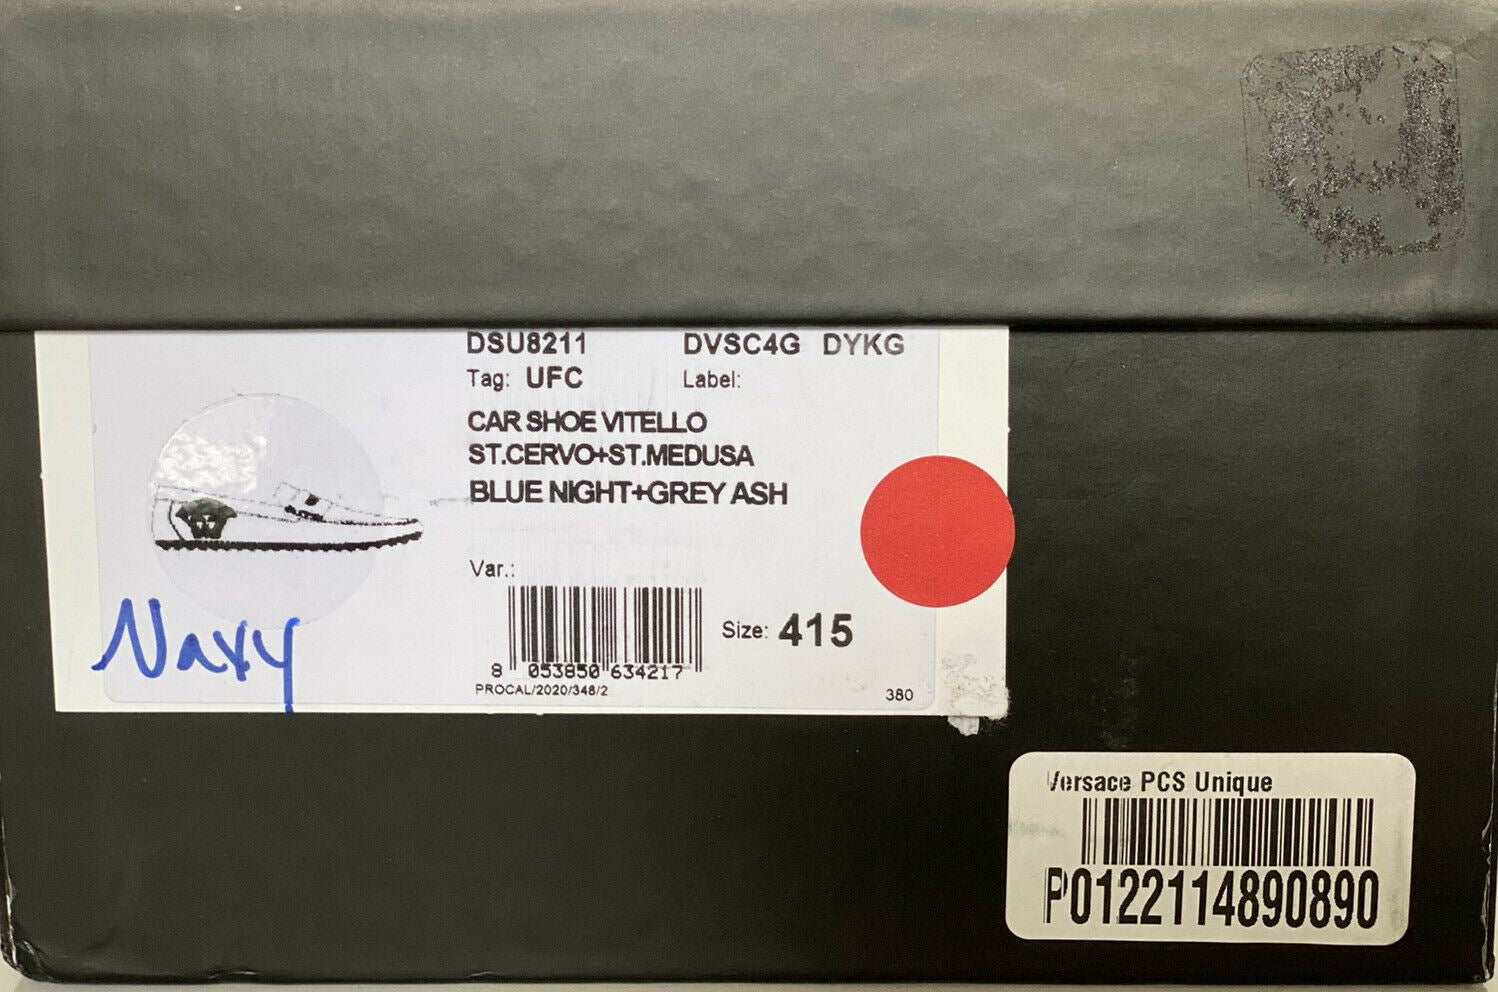 NIB 695 долларов США VERSACE Medusa Мужские синие кожаные туфли для водителя 8,5 США (41,5 ЕС) IT 8211